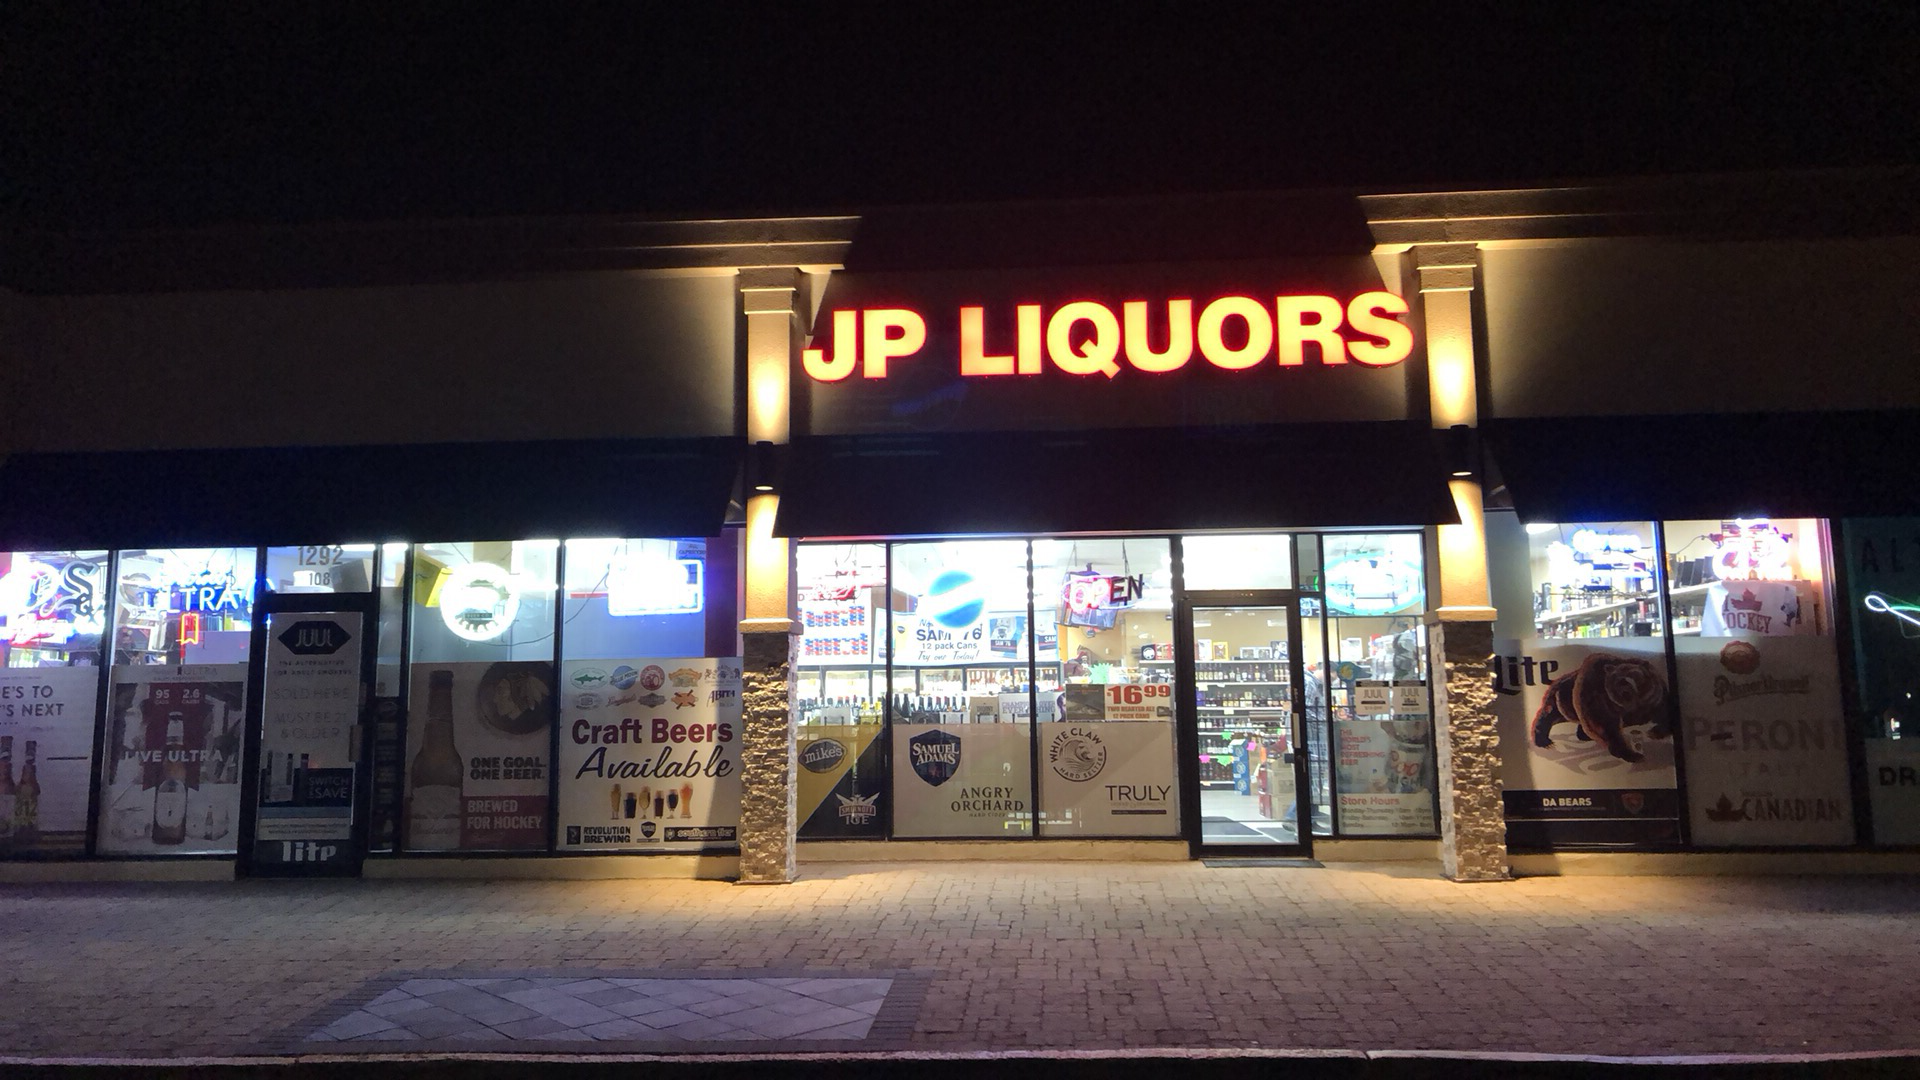 J.P Liquors